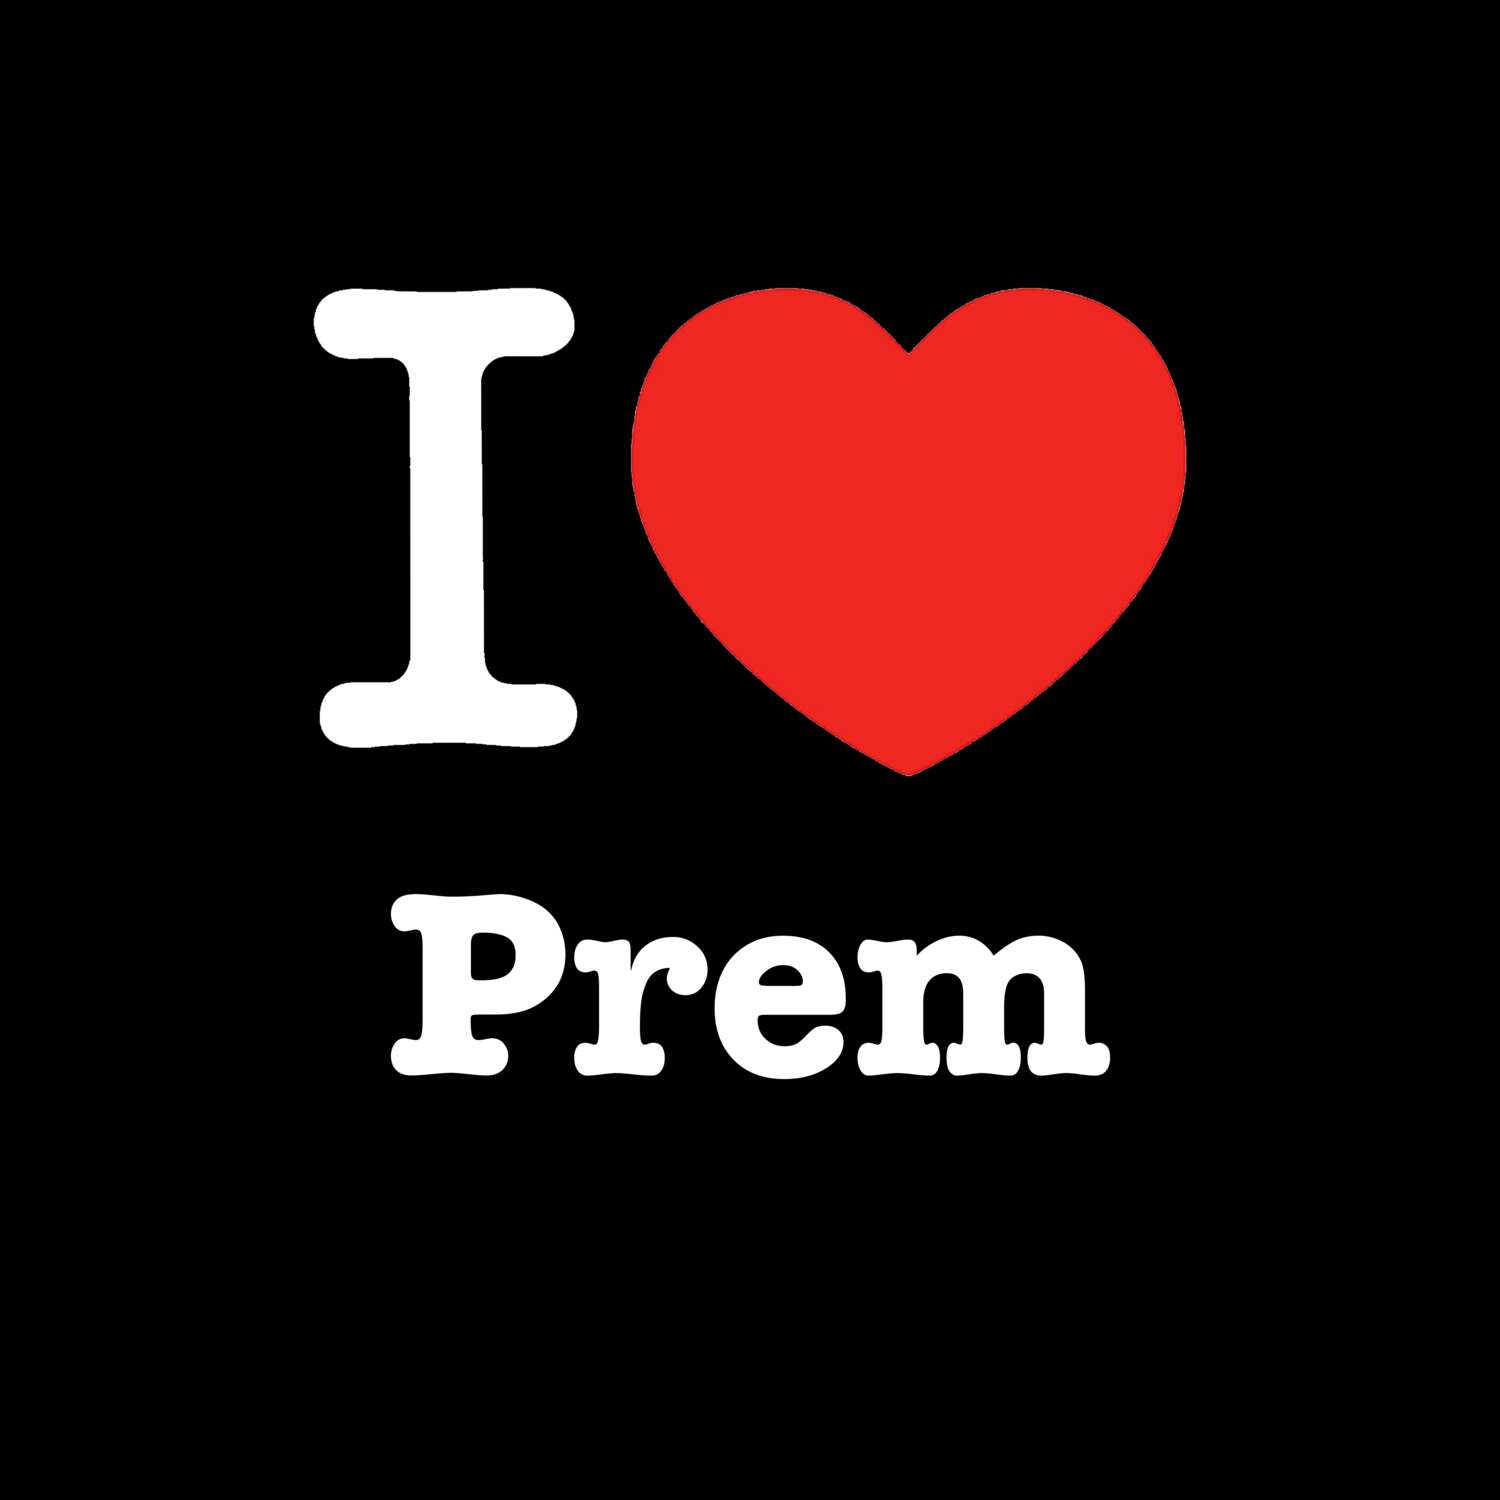 Prem T-Shirt »I love«